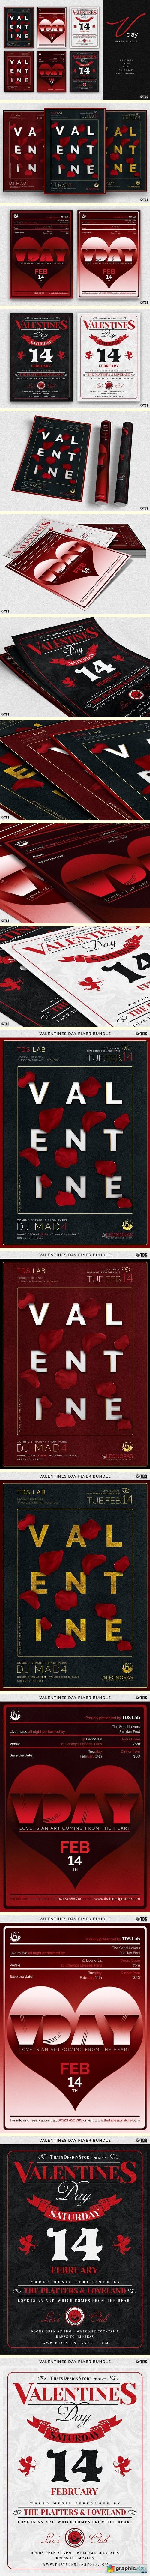 Valentines Day Flyer Bundle